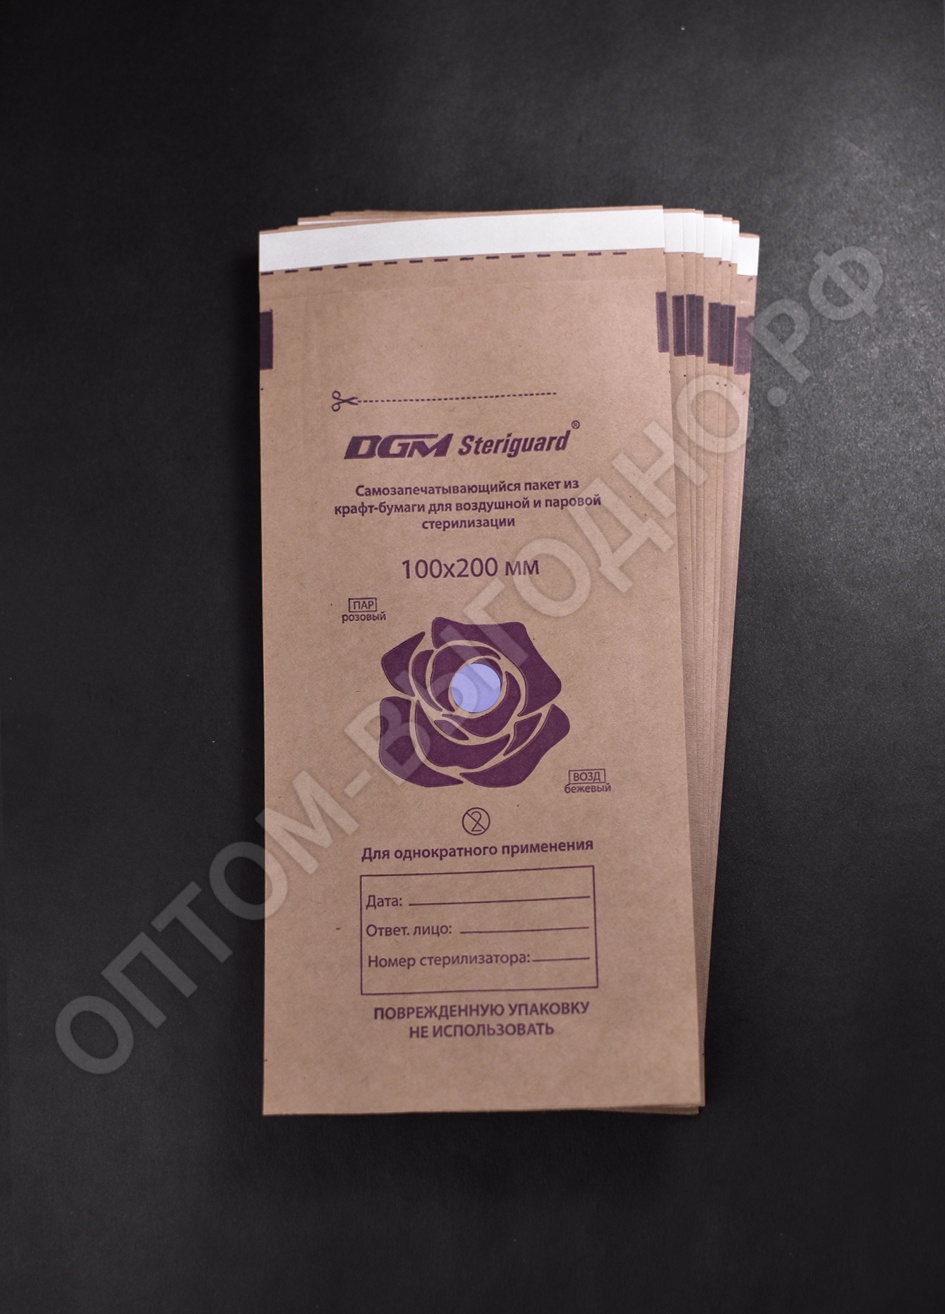 Пакет из крафт-бумаги самозапечатывающийся для стерилизации "DGM Steriguard" 100х200 мм (100 штук)